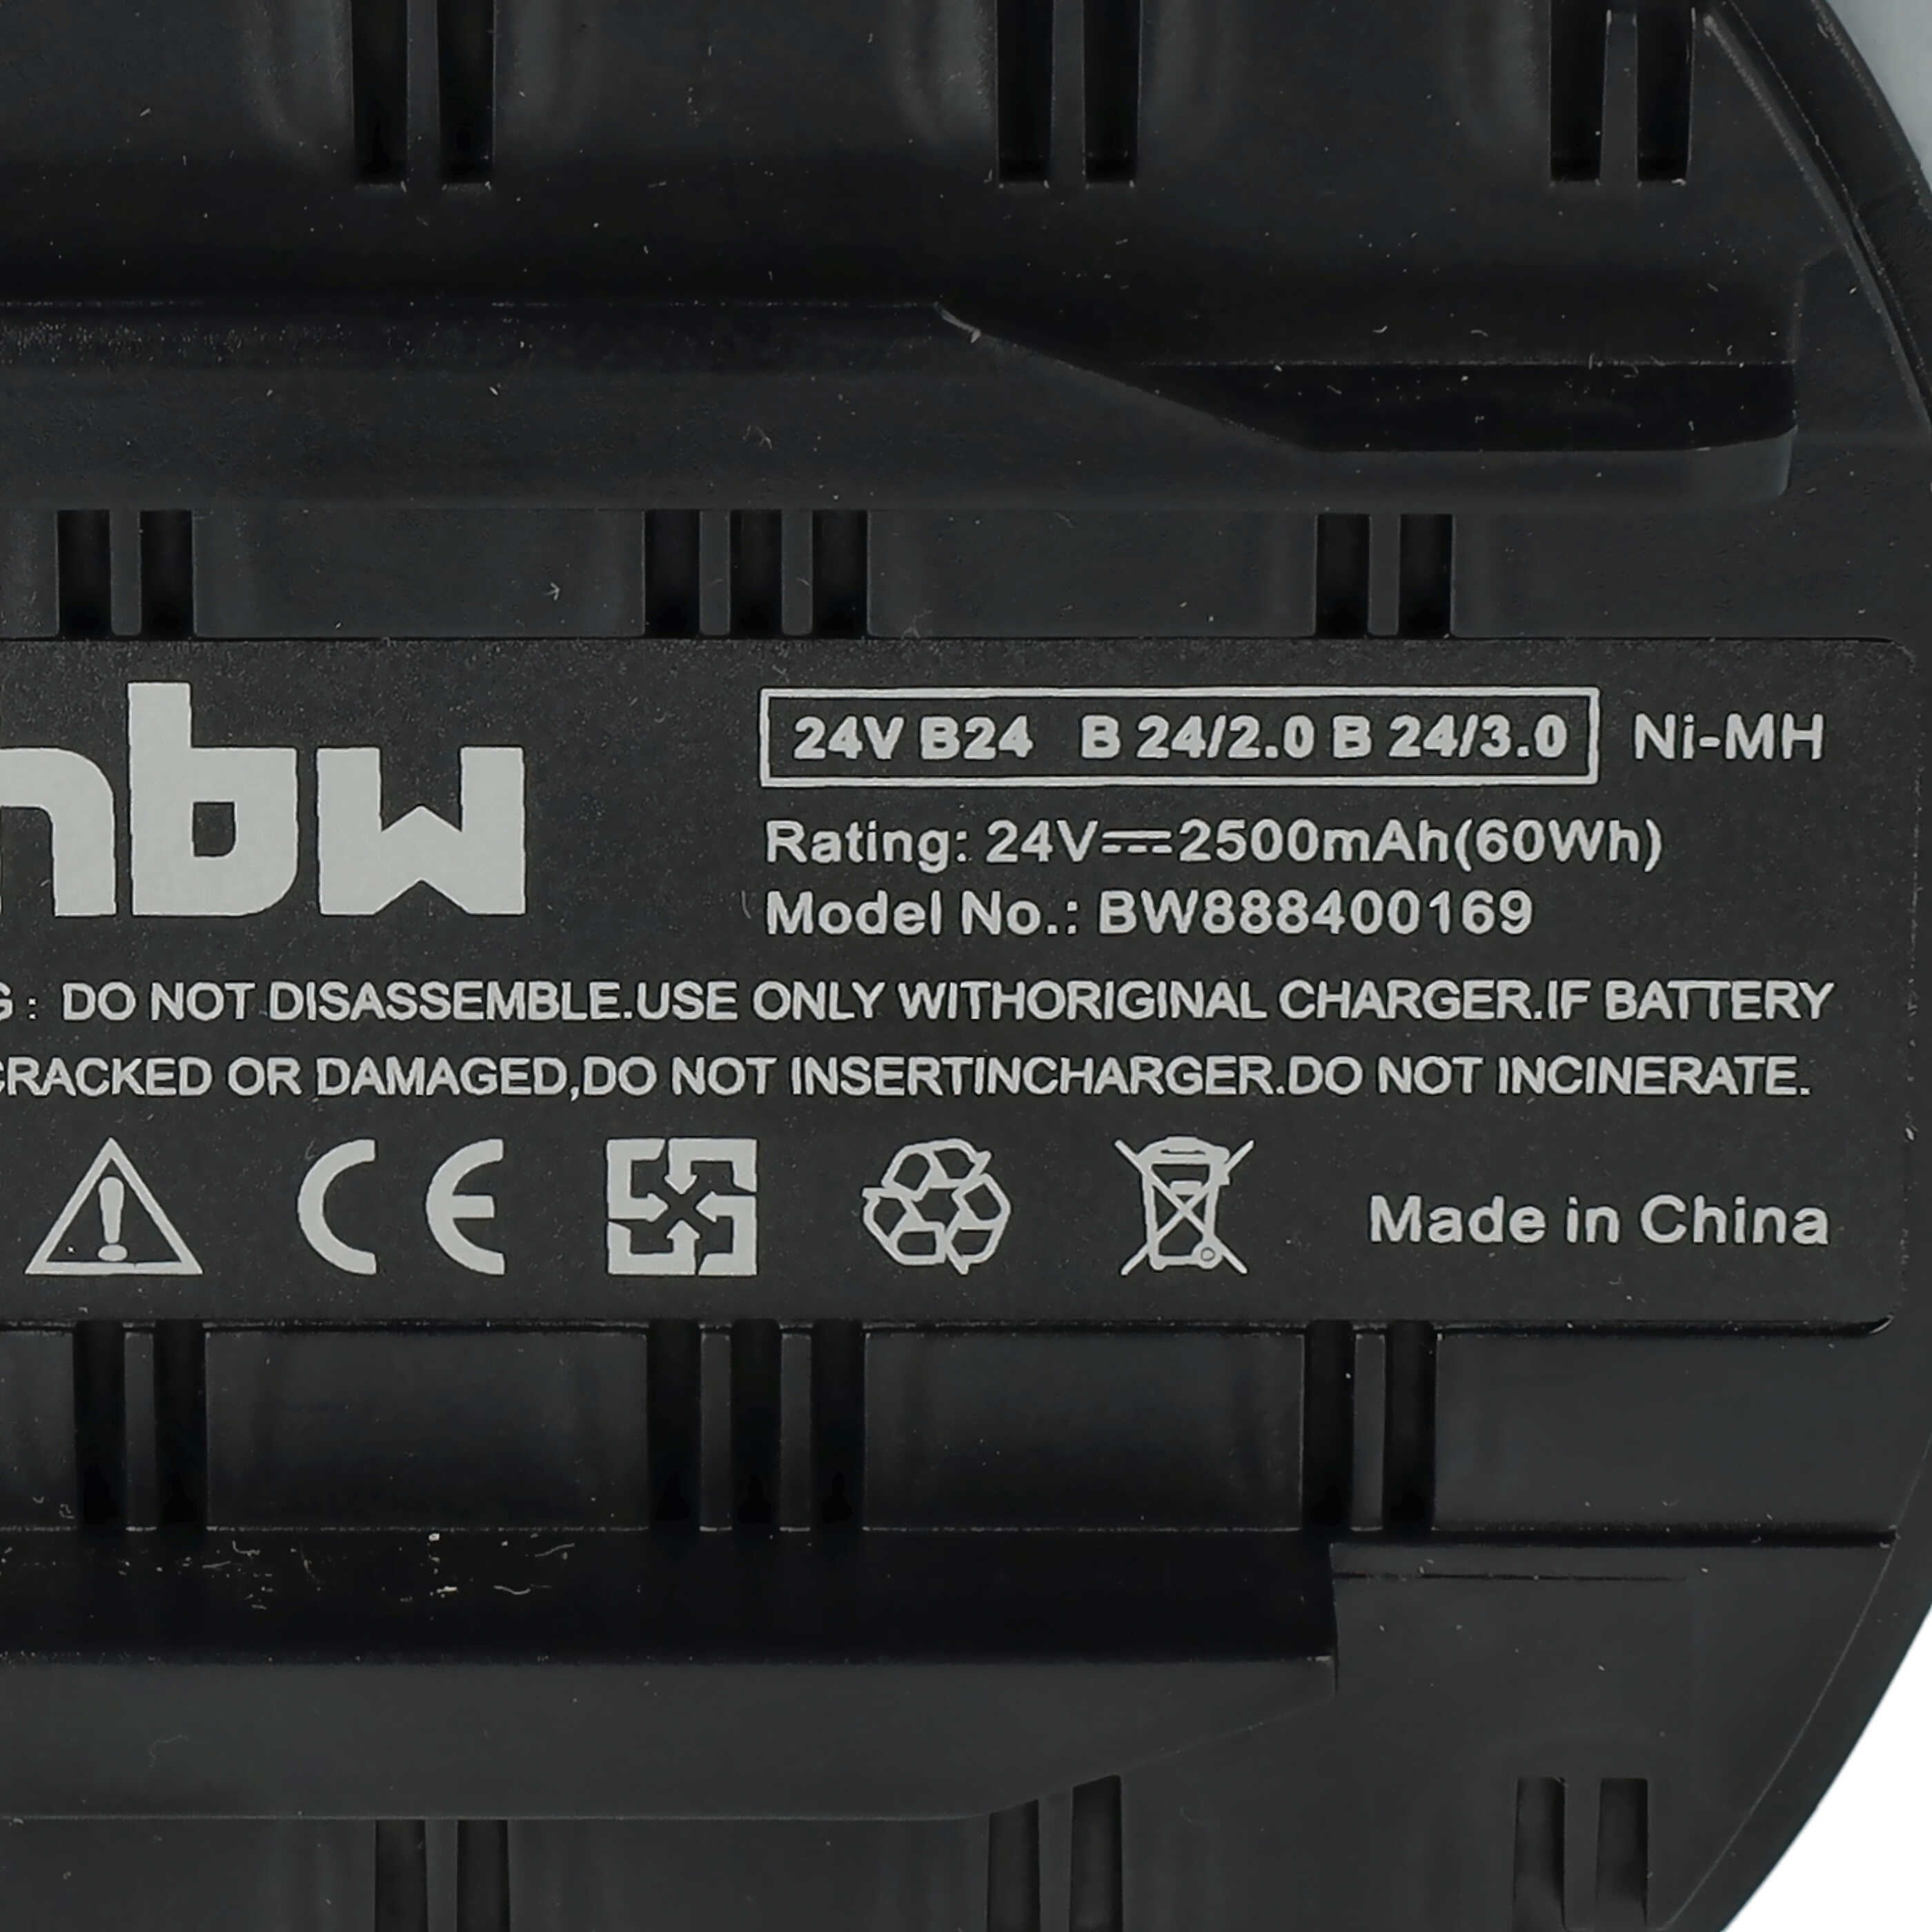 Batterie remplace Hilti B24/3.0, B24/2.0, B24 pour outil électrique - 2500 mAh, 24 V, NiMH